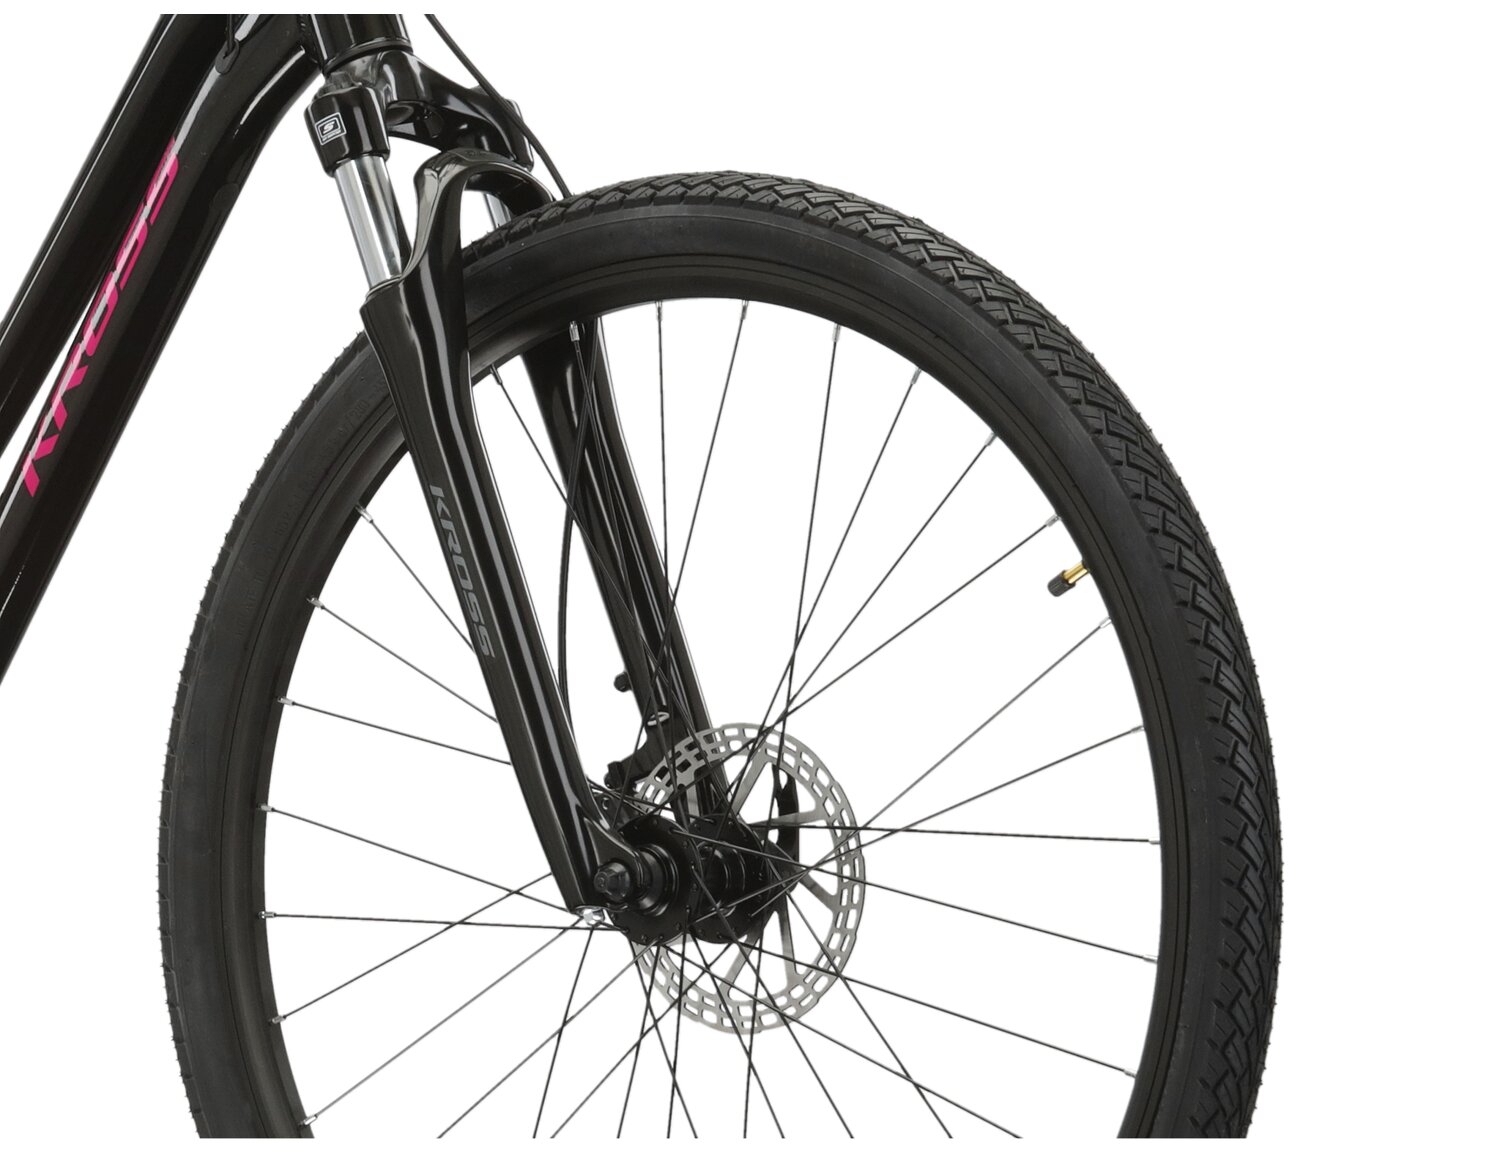 Aluminowa rama, amortyzowany widelec SR SUNTOUR NEX oraz opony Wanda w rowerze crossowym damskim KROSS Evado 4.0 